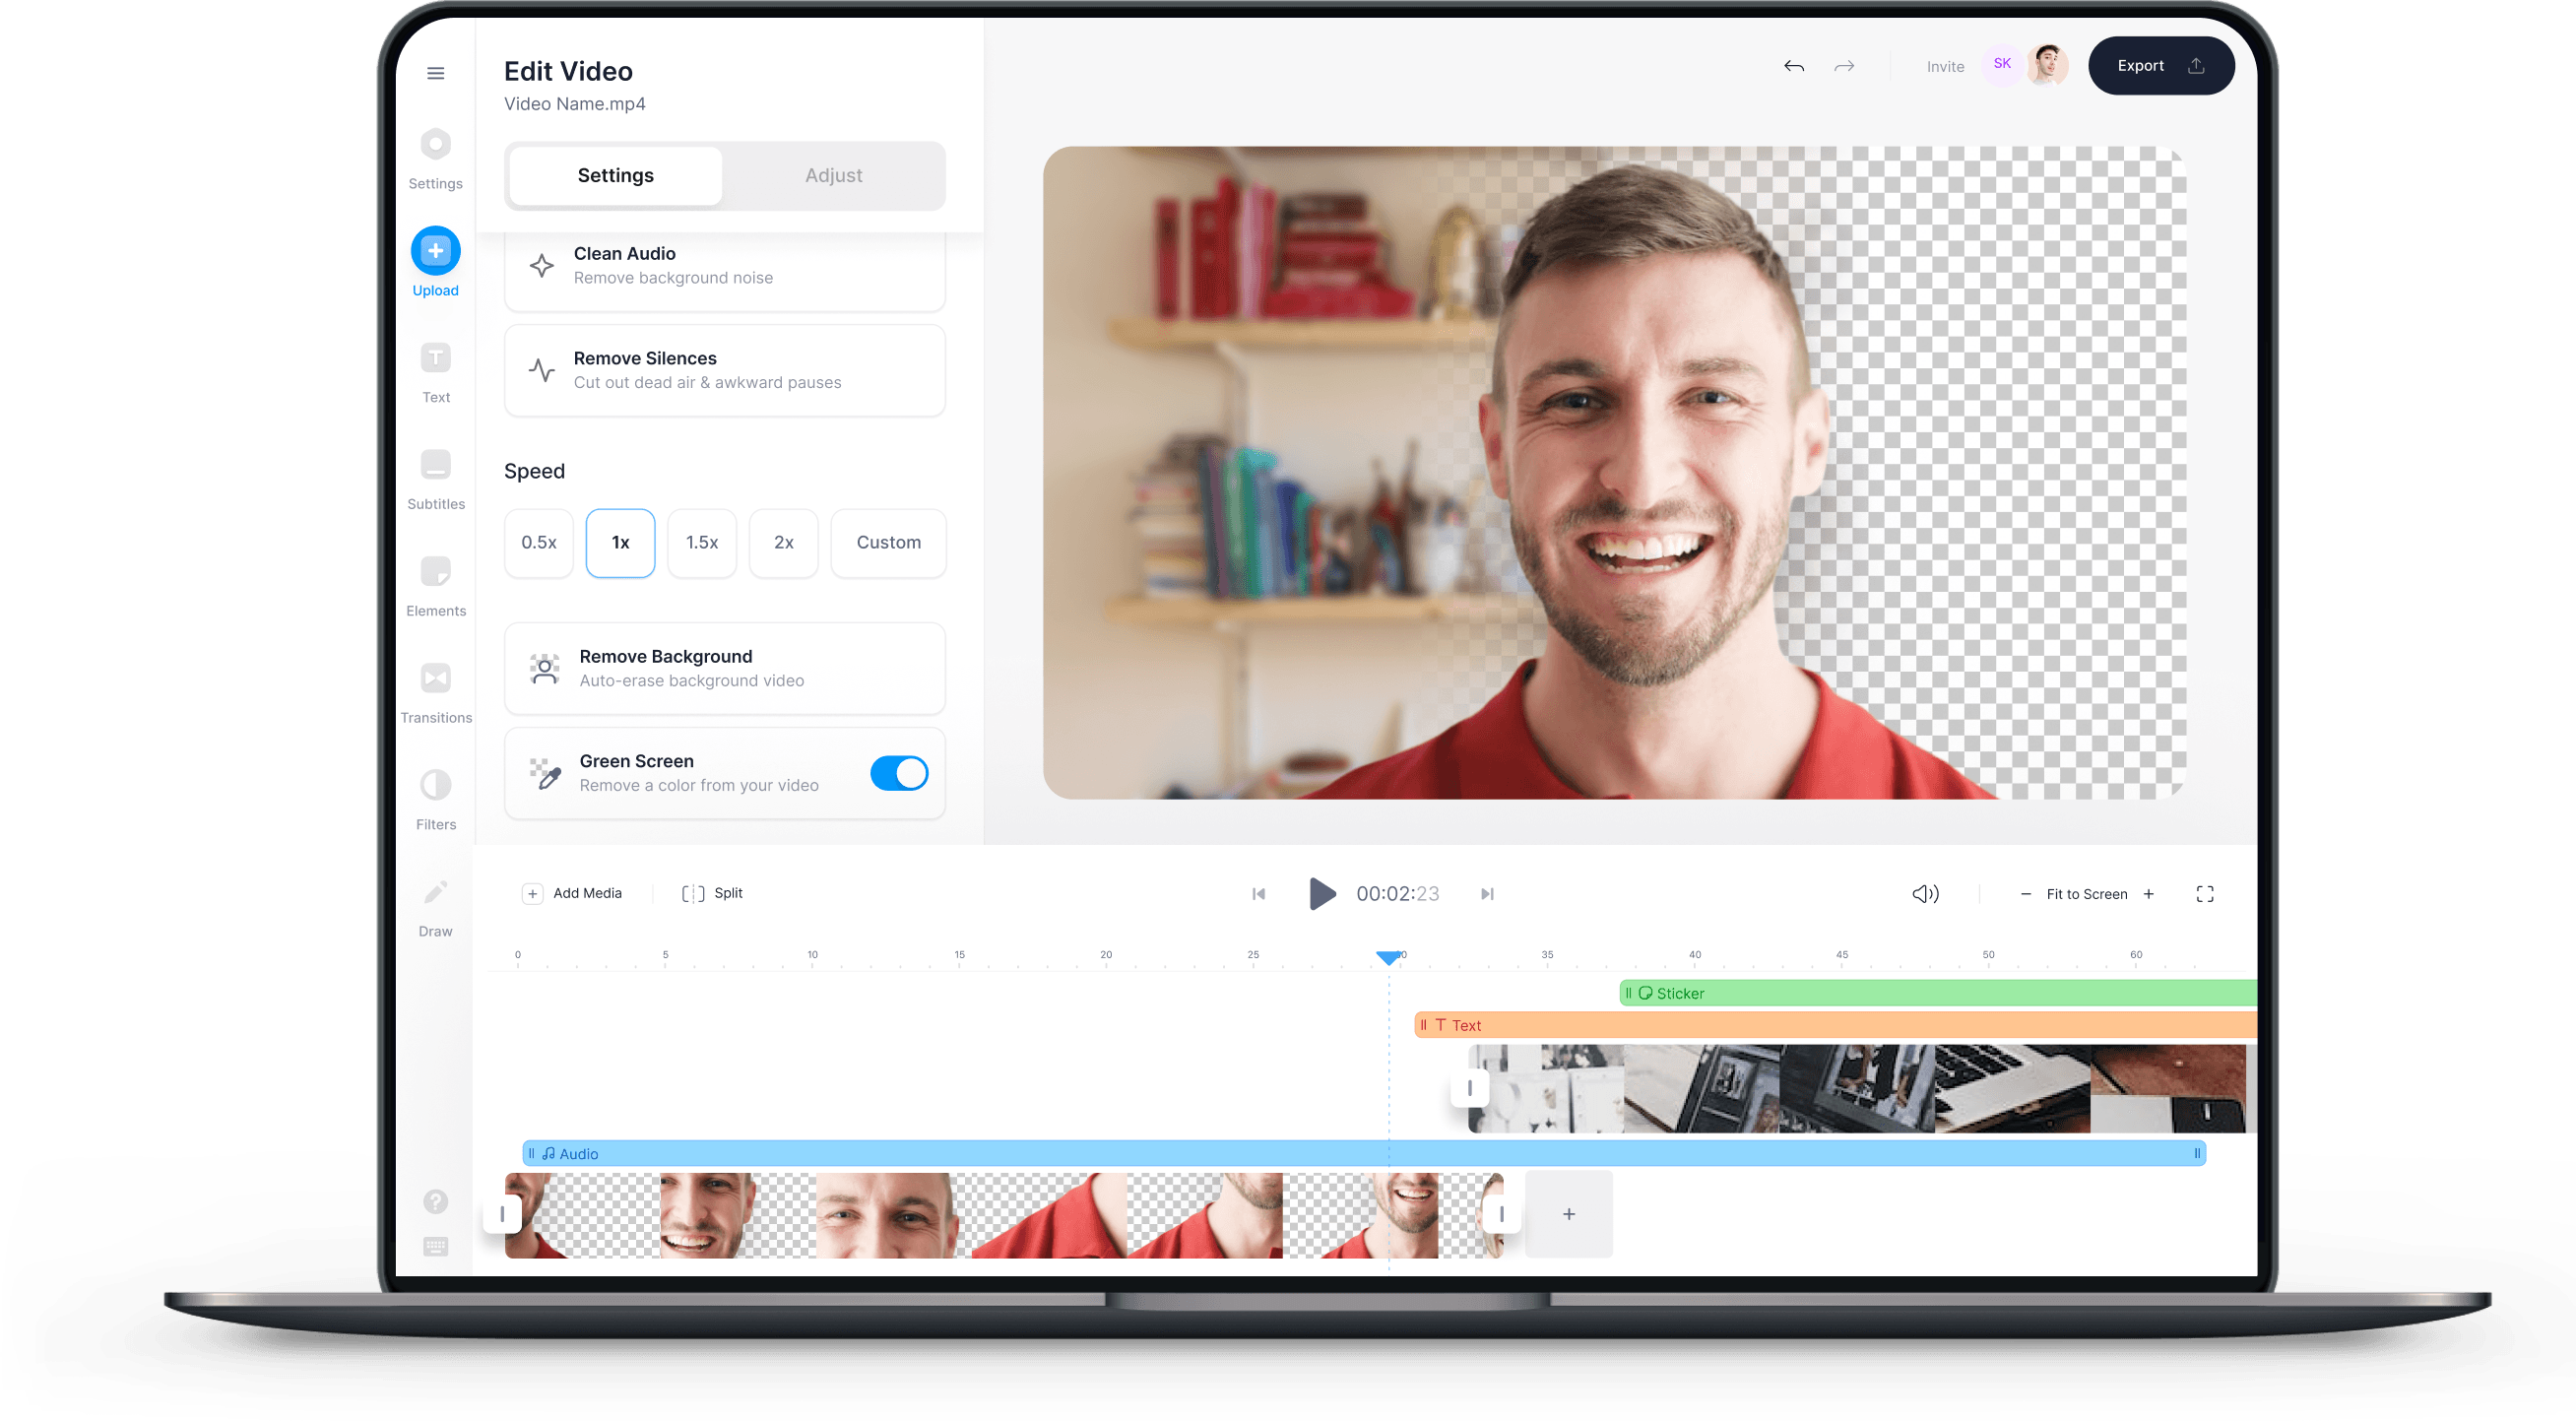 Việc loại bỏ nền ảnh tự động trong VEED sẽ giúp bạn dễ dàng chỉnh sửa video một cách nhanh chóng và tiện lợi hơn bao giờ hết. Với phần mềm VEED, bạn sẽ tiết kiệm thời gian và tăng hiệu quả công việc của mình một cách hoàn hảo.